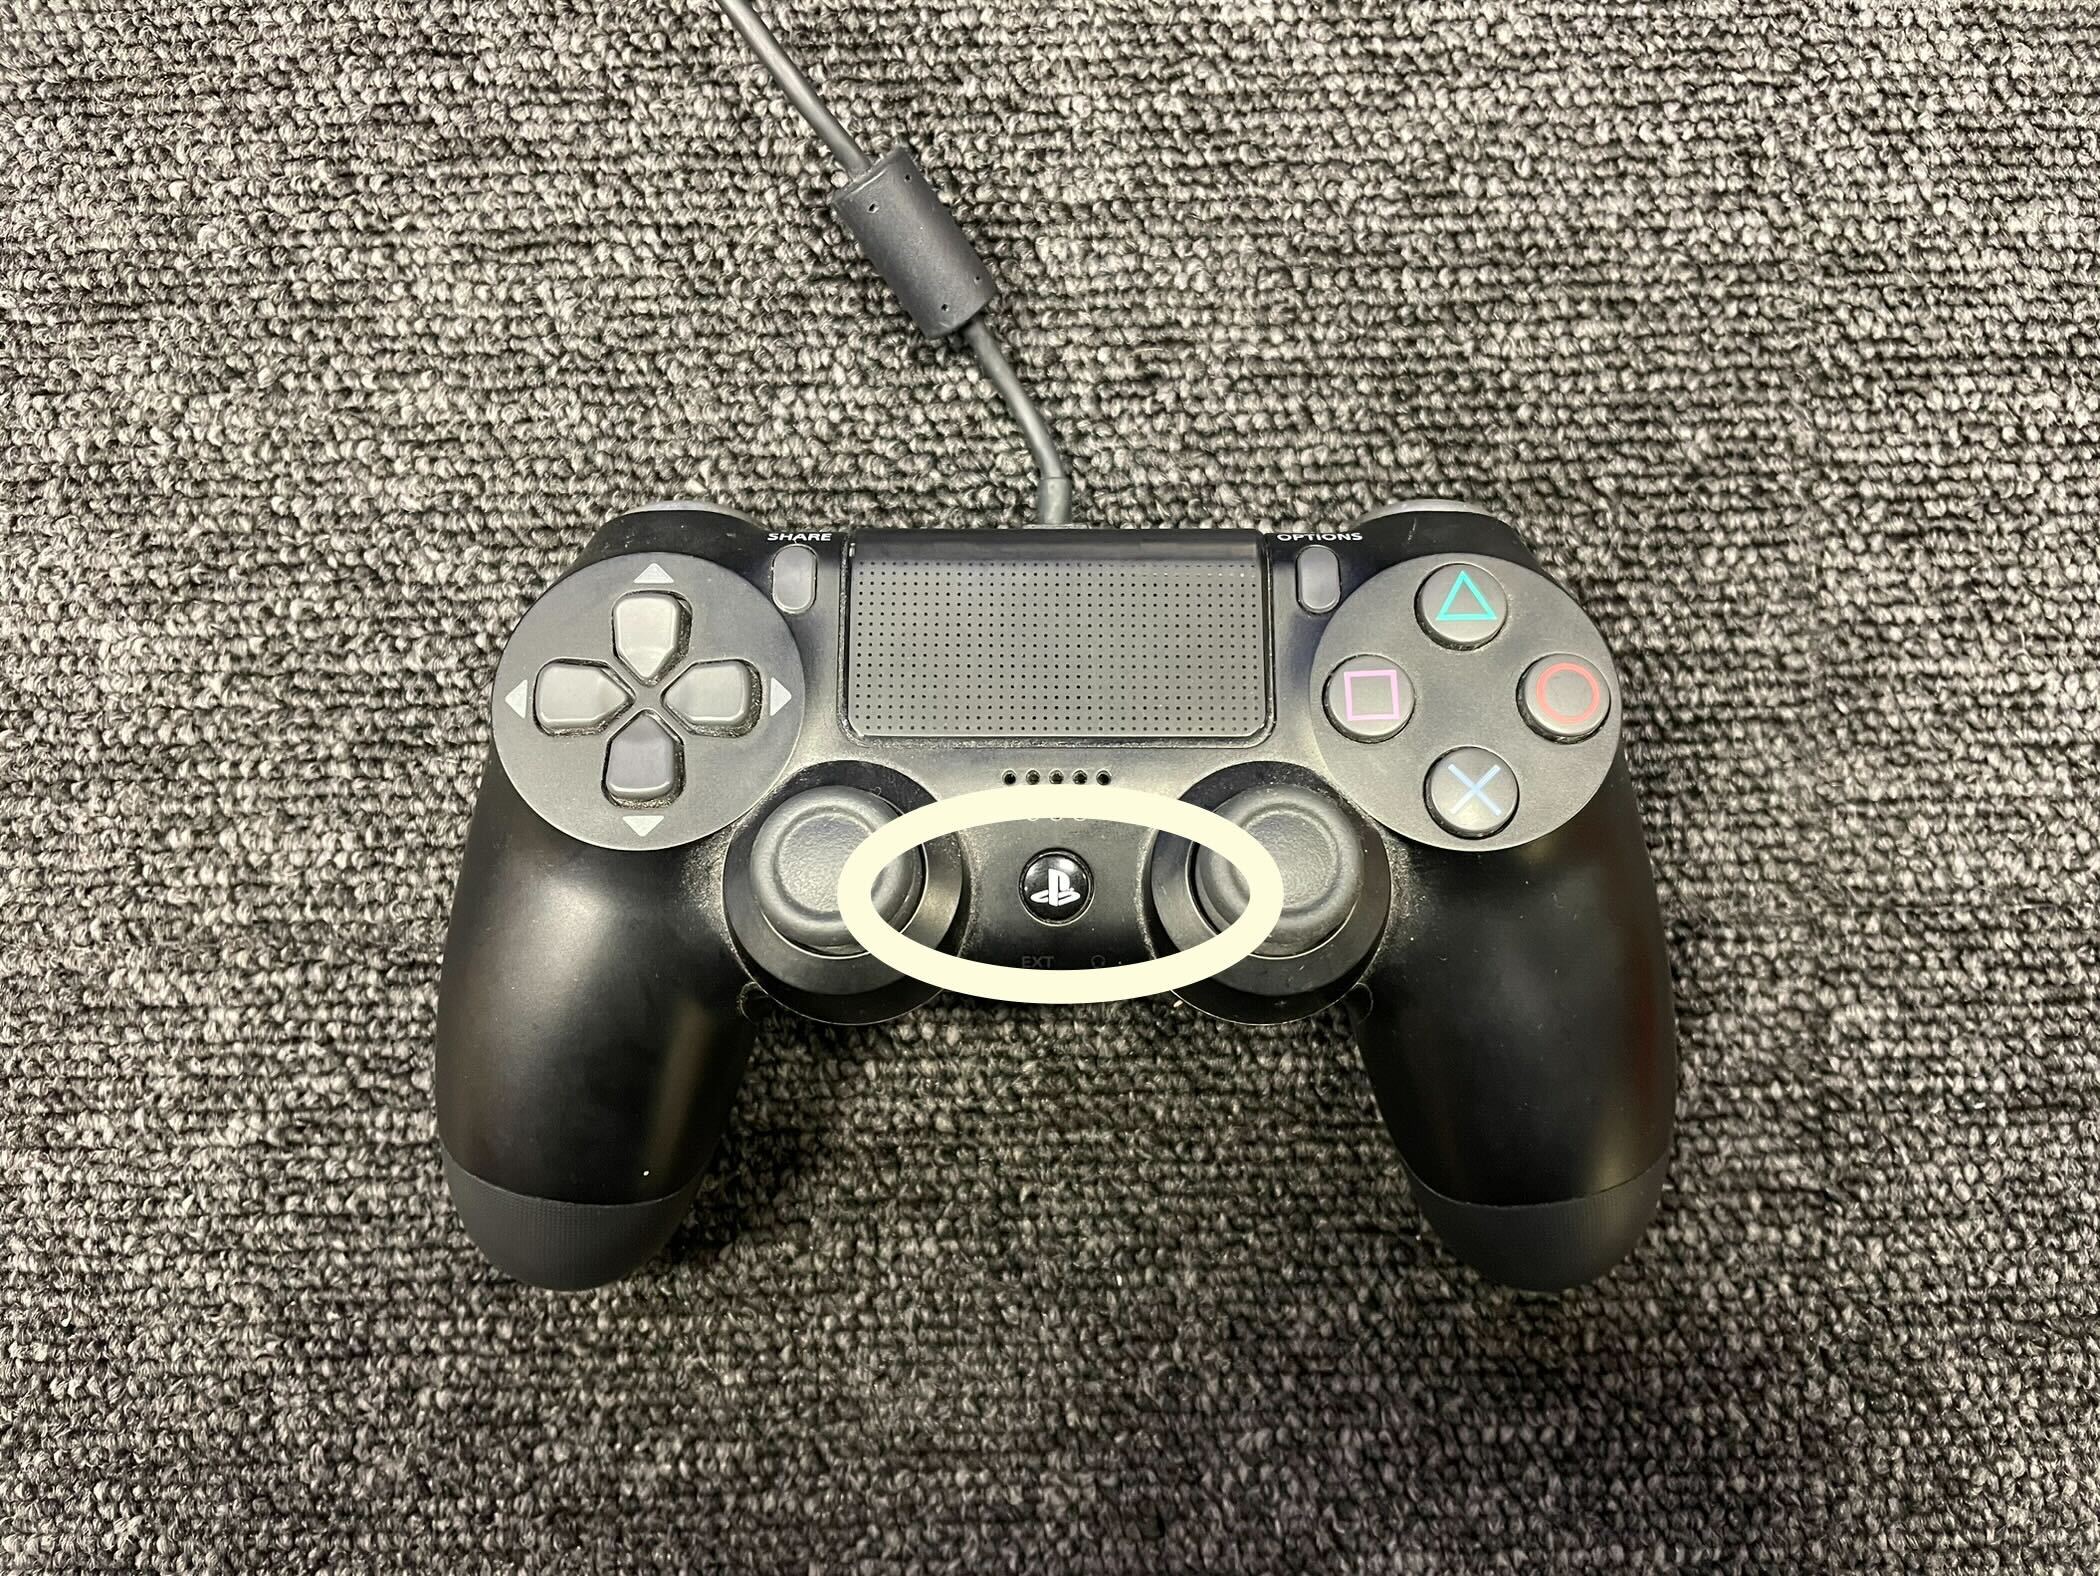 Ruckus strække bundet How to turn a PS4 controller off